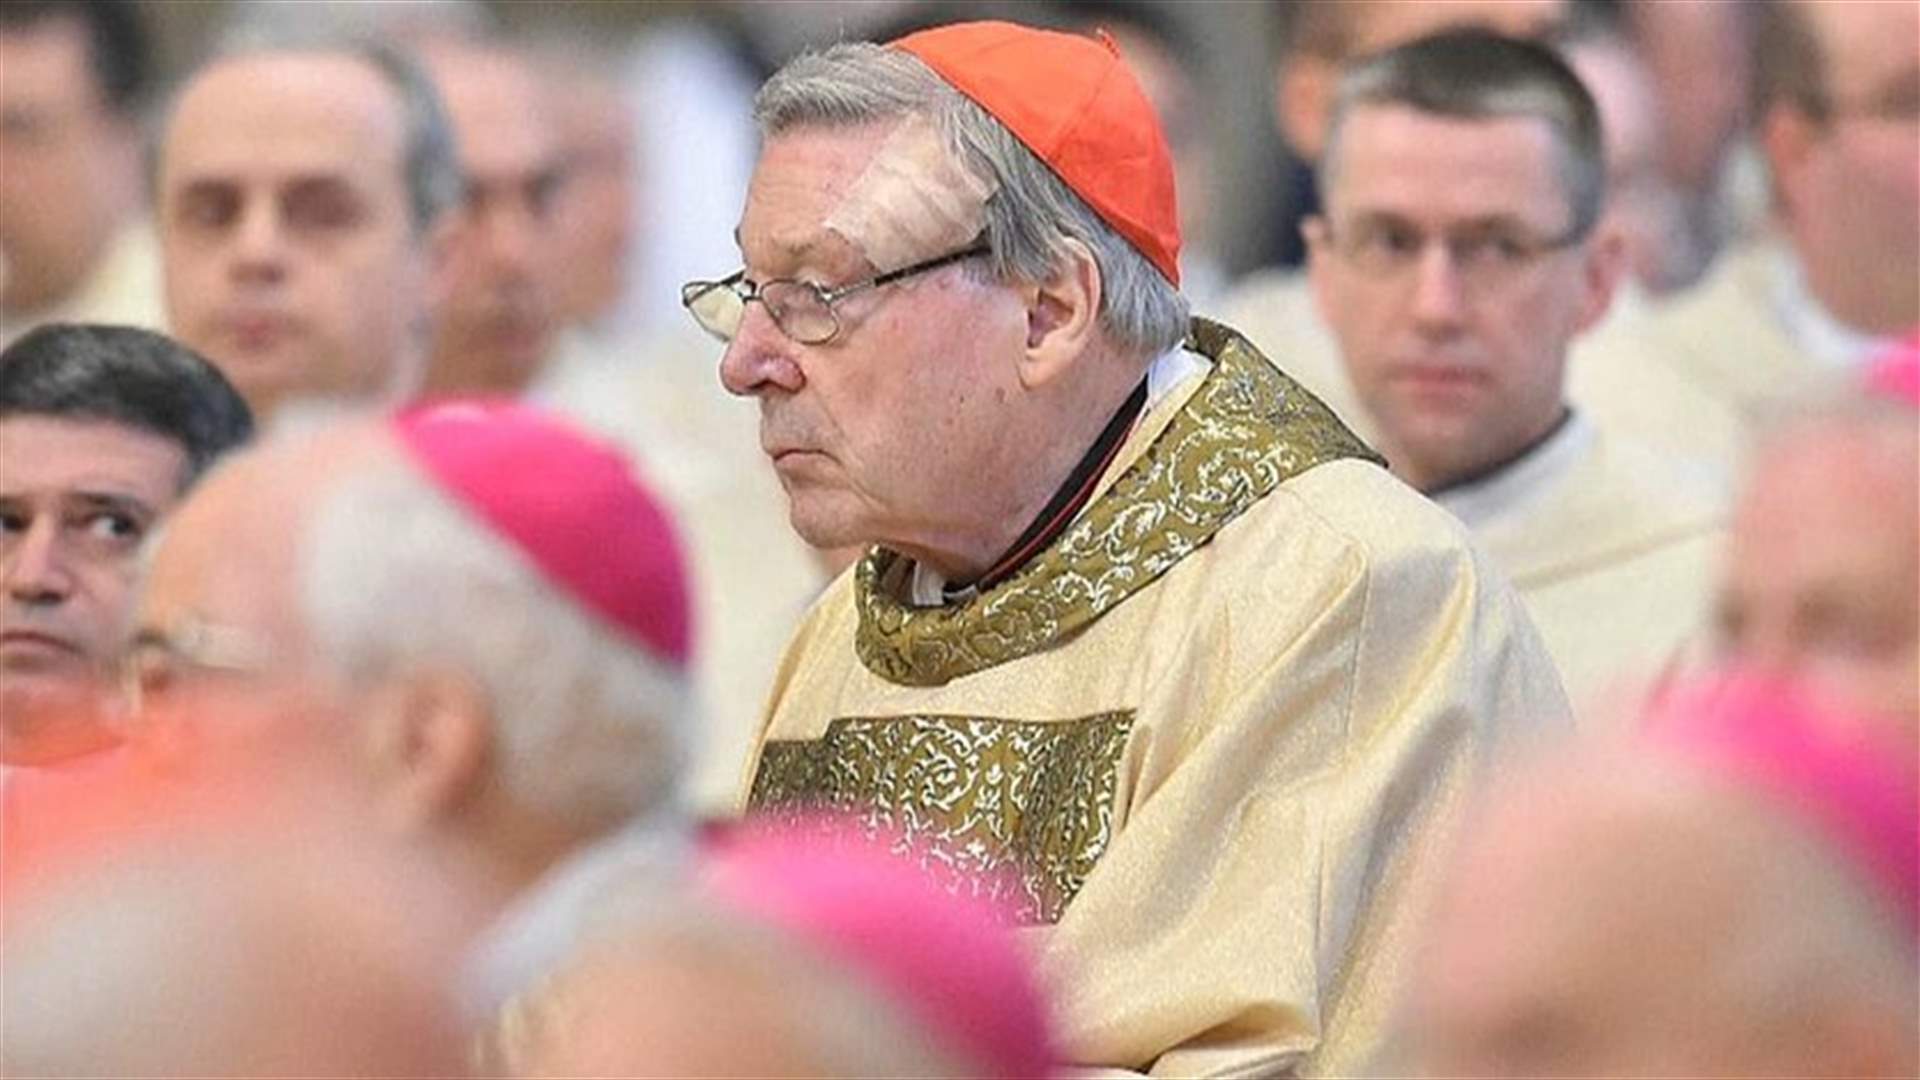 بعد إدانته بالاعتداء جنسيًا على طفلين... الفاتيكان يقيل الكاردينال بيل من منصبه في وزارة الاقتصاد